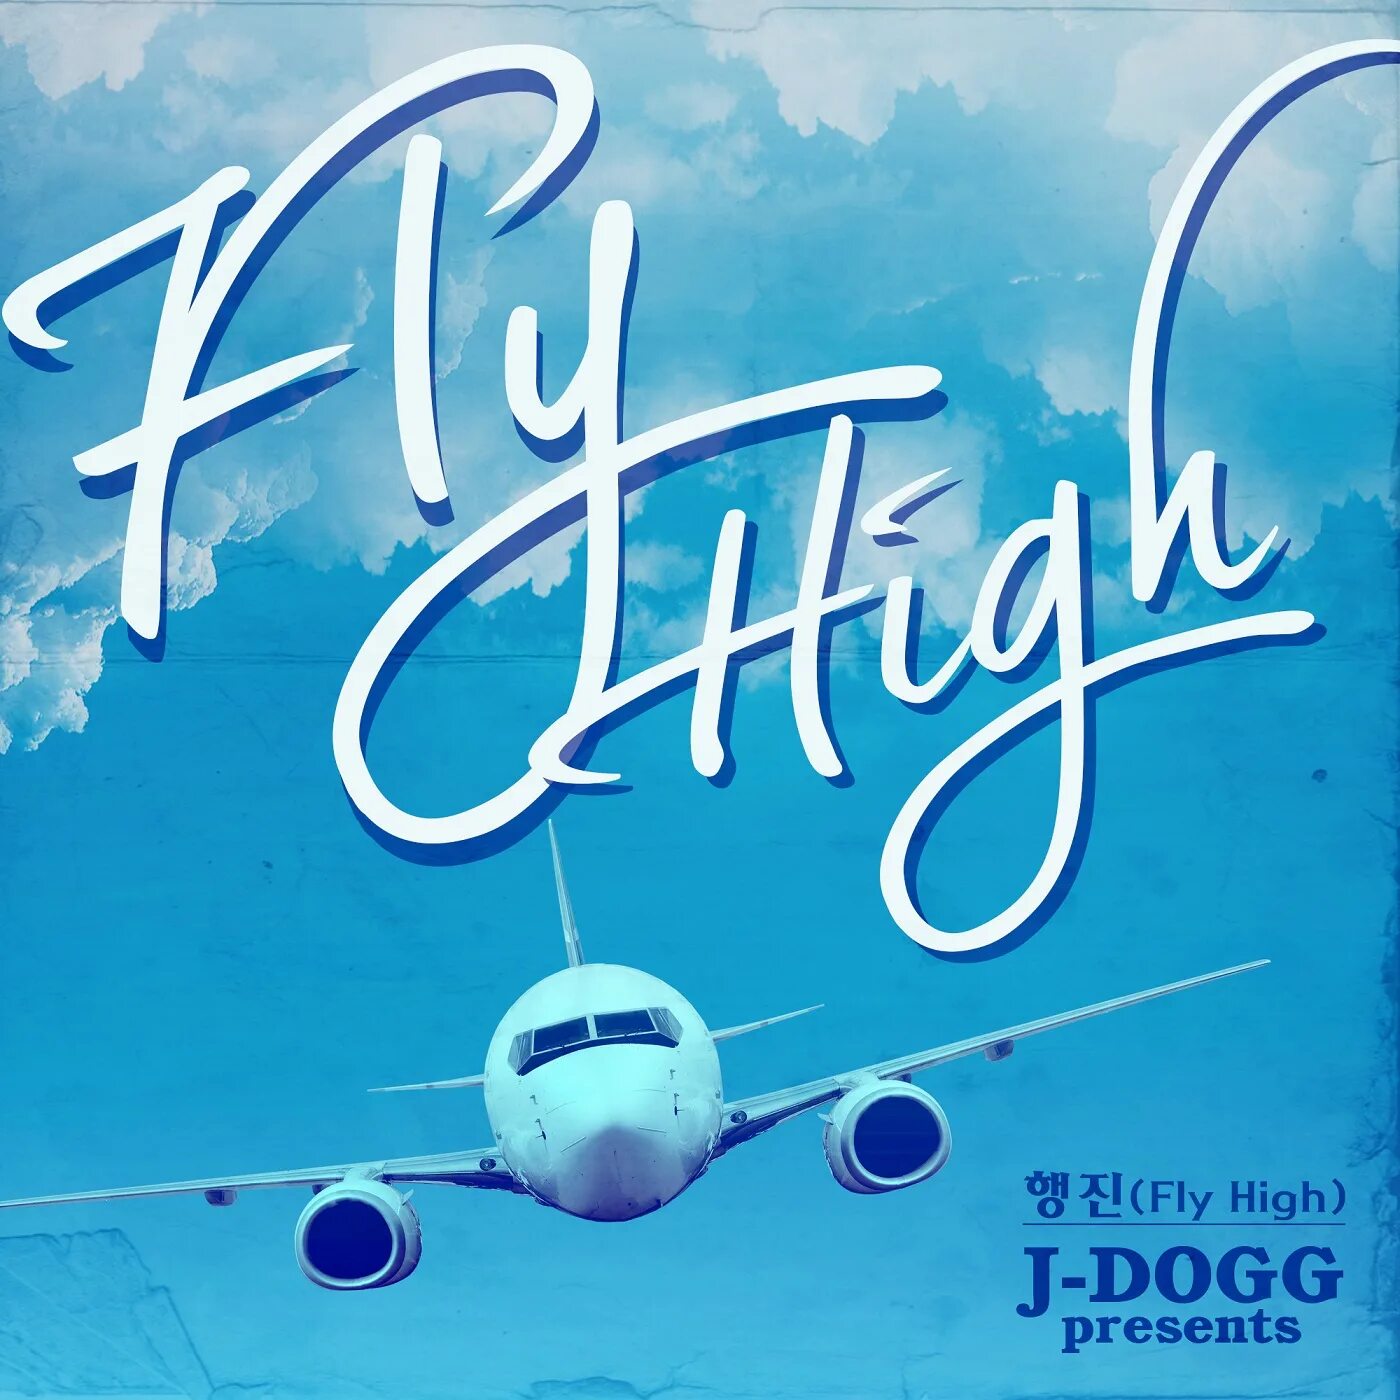 Fly High. Fly High activity book. Fly High 1. Fly High 2.